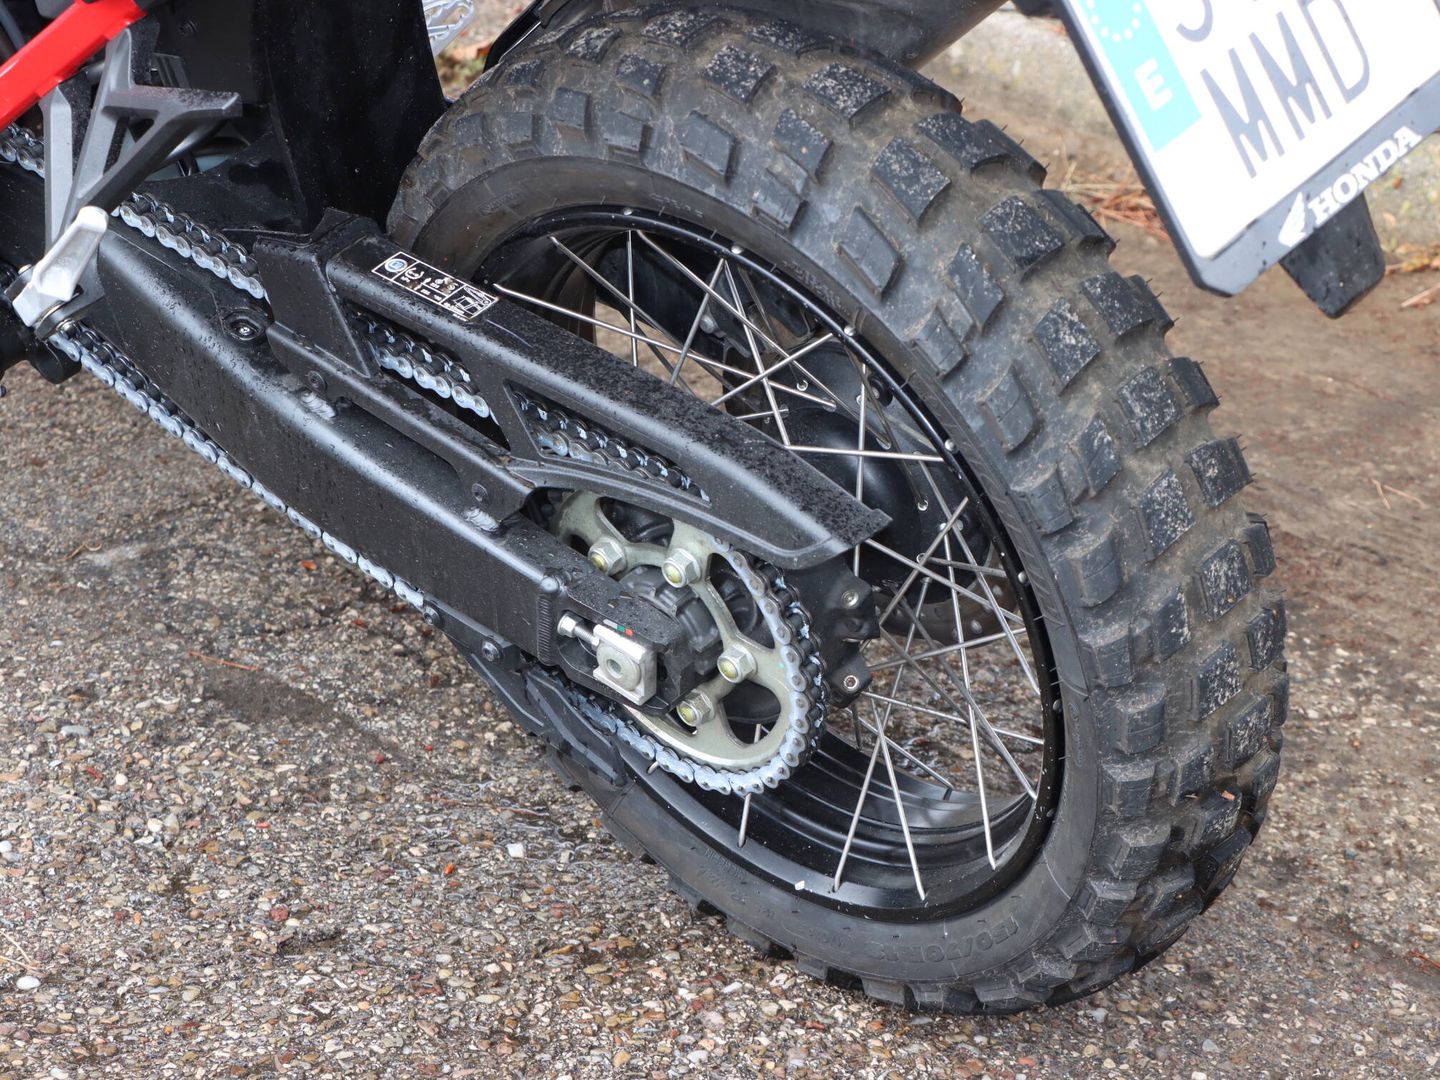 Si sales a campo con frecuencia, el neumático de tacos será más que recomendable. Y tiene buen comportamiento en carretera.